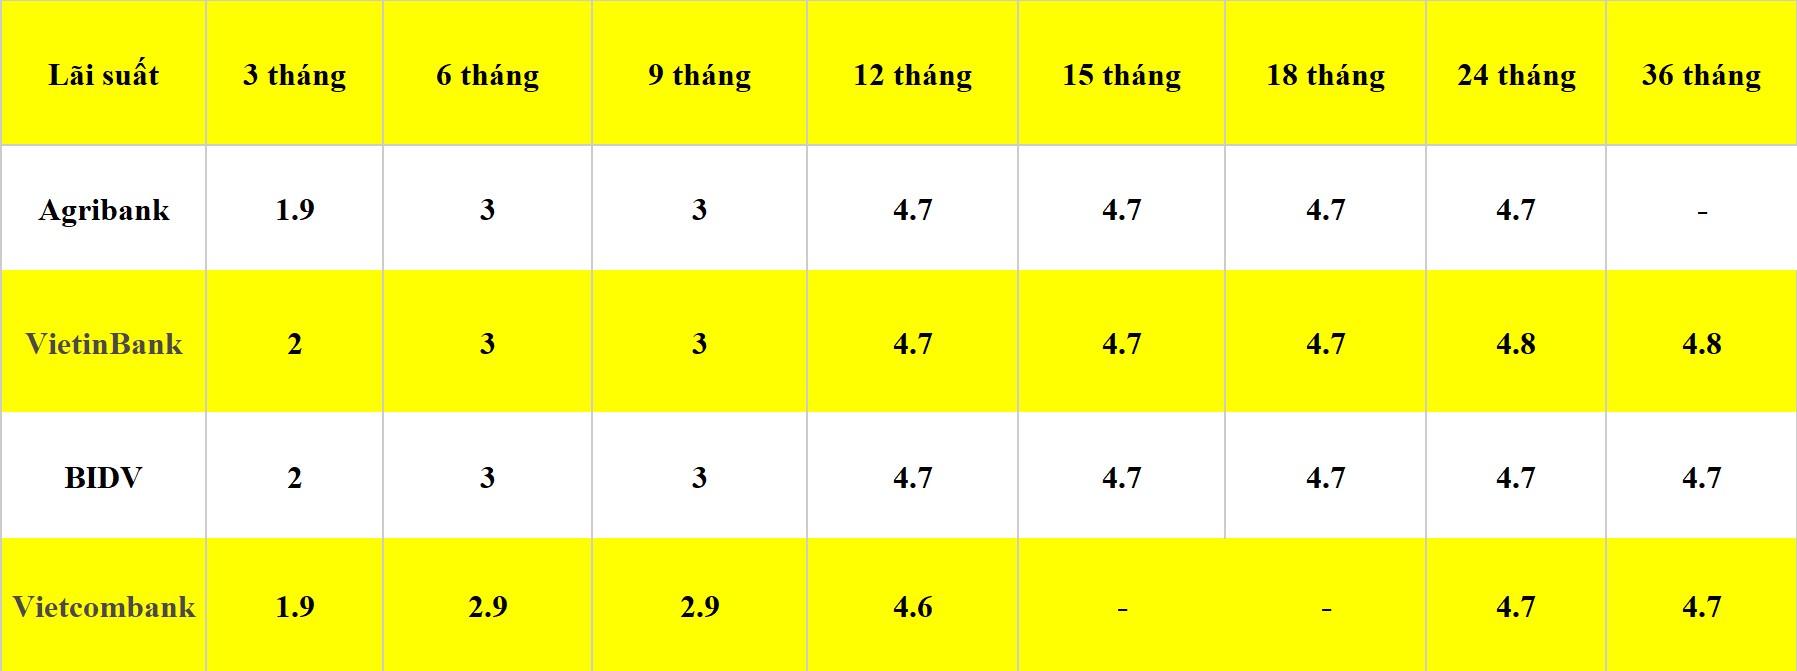 Bảng lãi suất các kỳ hạn tại Vietcombank, Agribank, VietinBank và BIDV. Số liệu ghi nhận ngày 22.4.2024. Đơn vị tính: %/năm. Bảng: Khương Duy